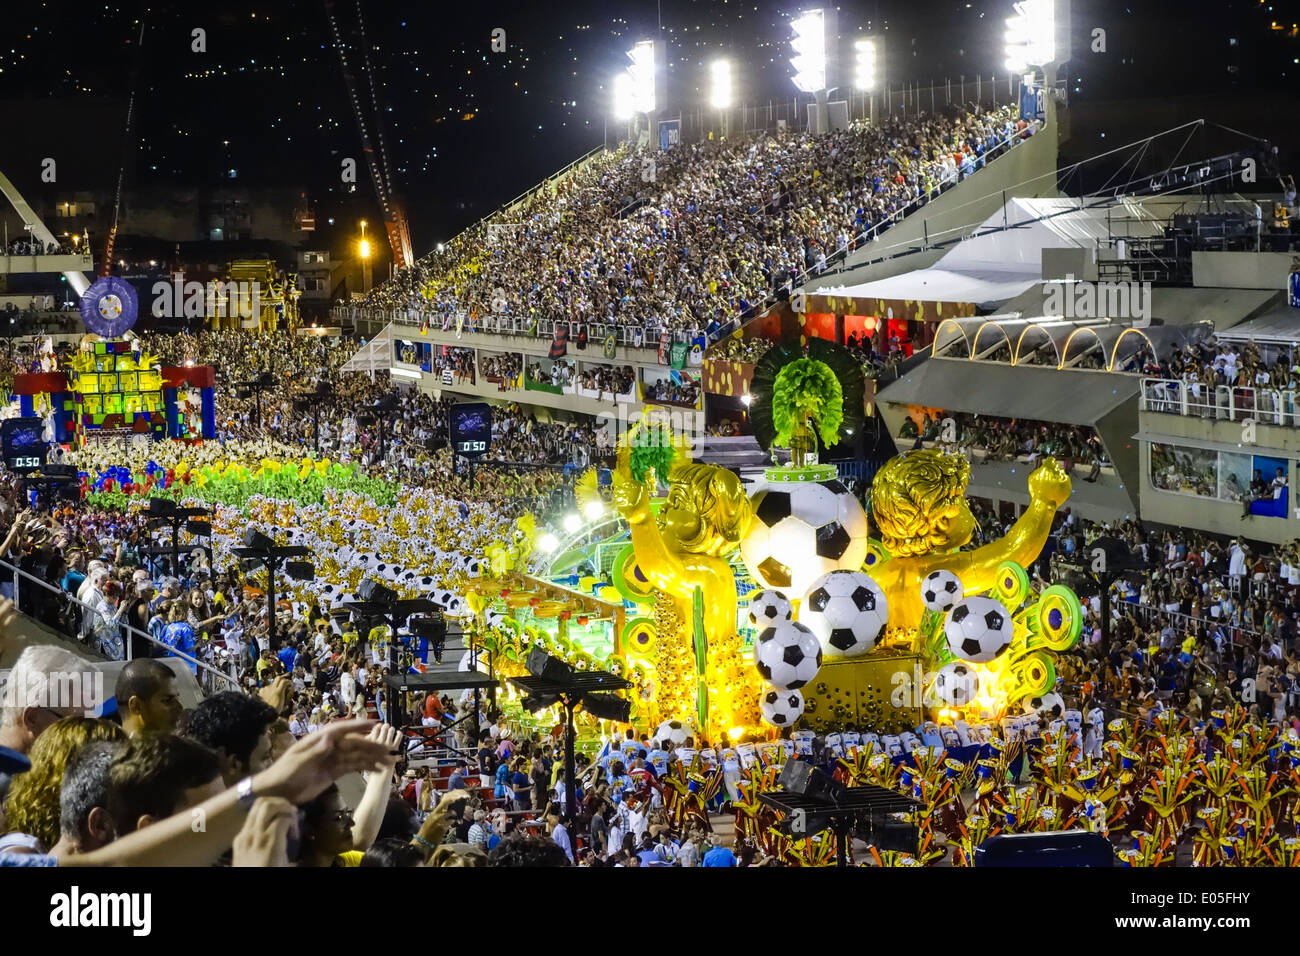 Coupe du Monde de la FIFA, brésil 2014 Championnat du monde de football, Rio de Janeiro, Brésil Banque D'Images